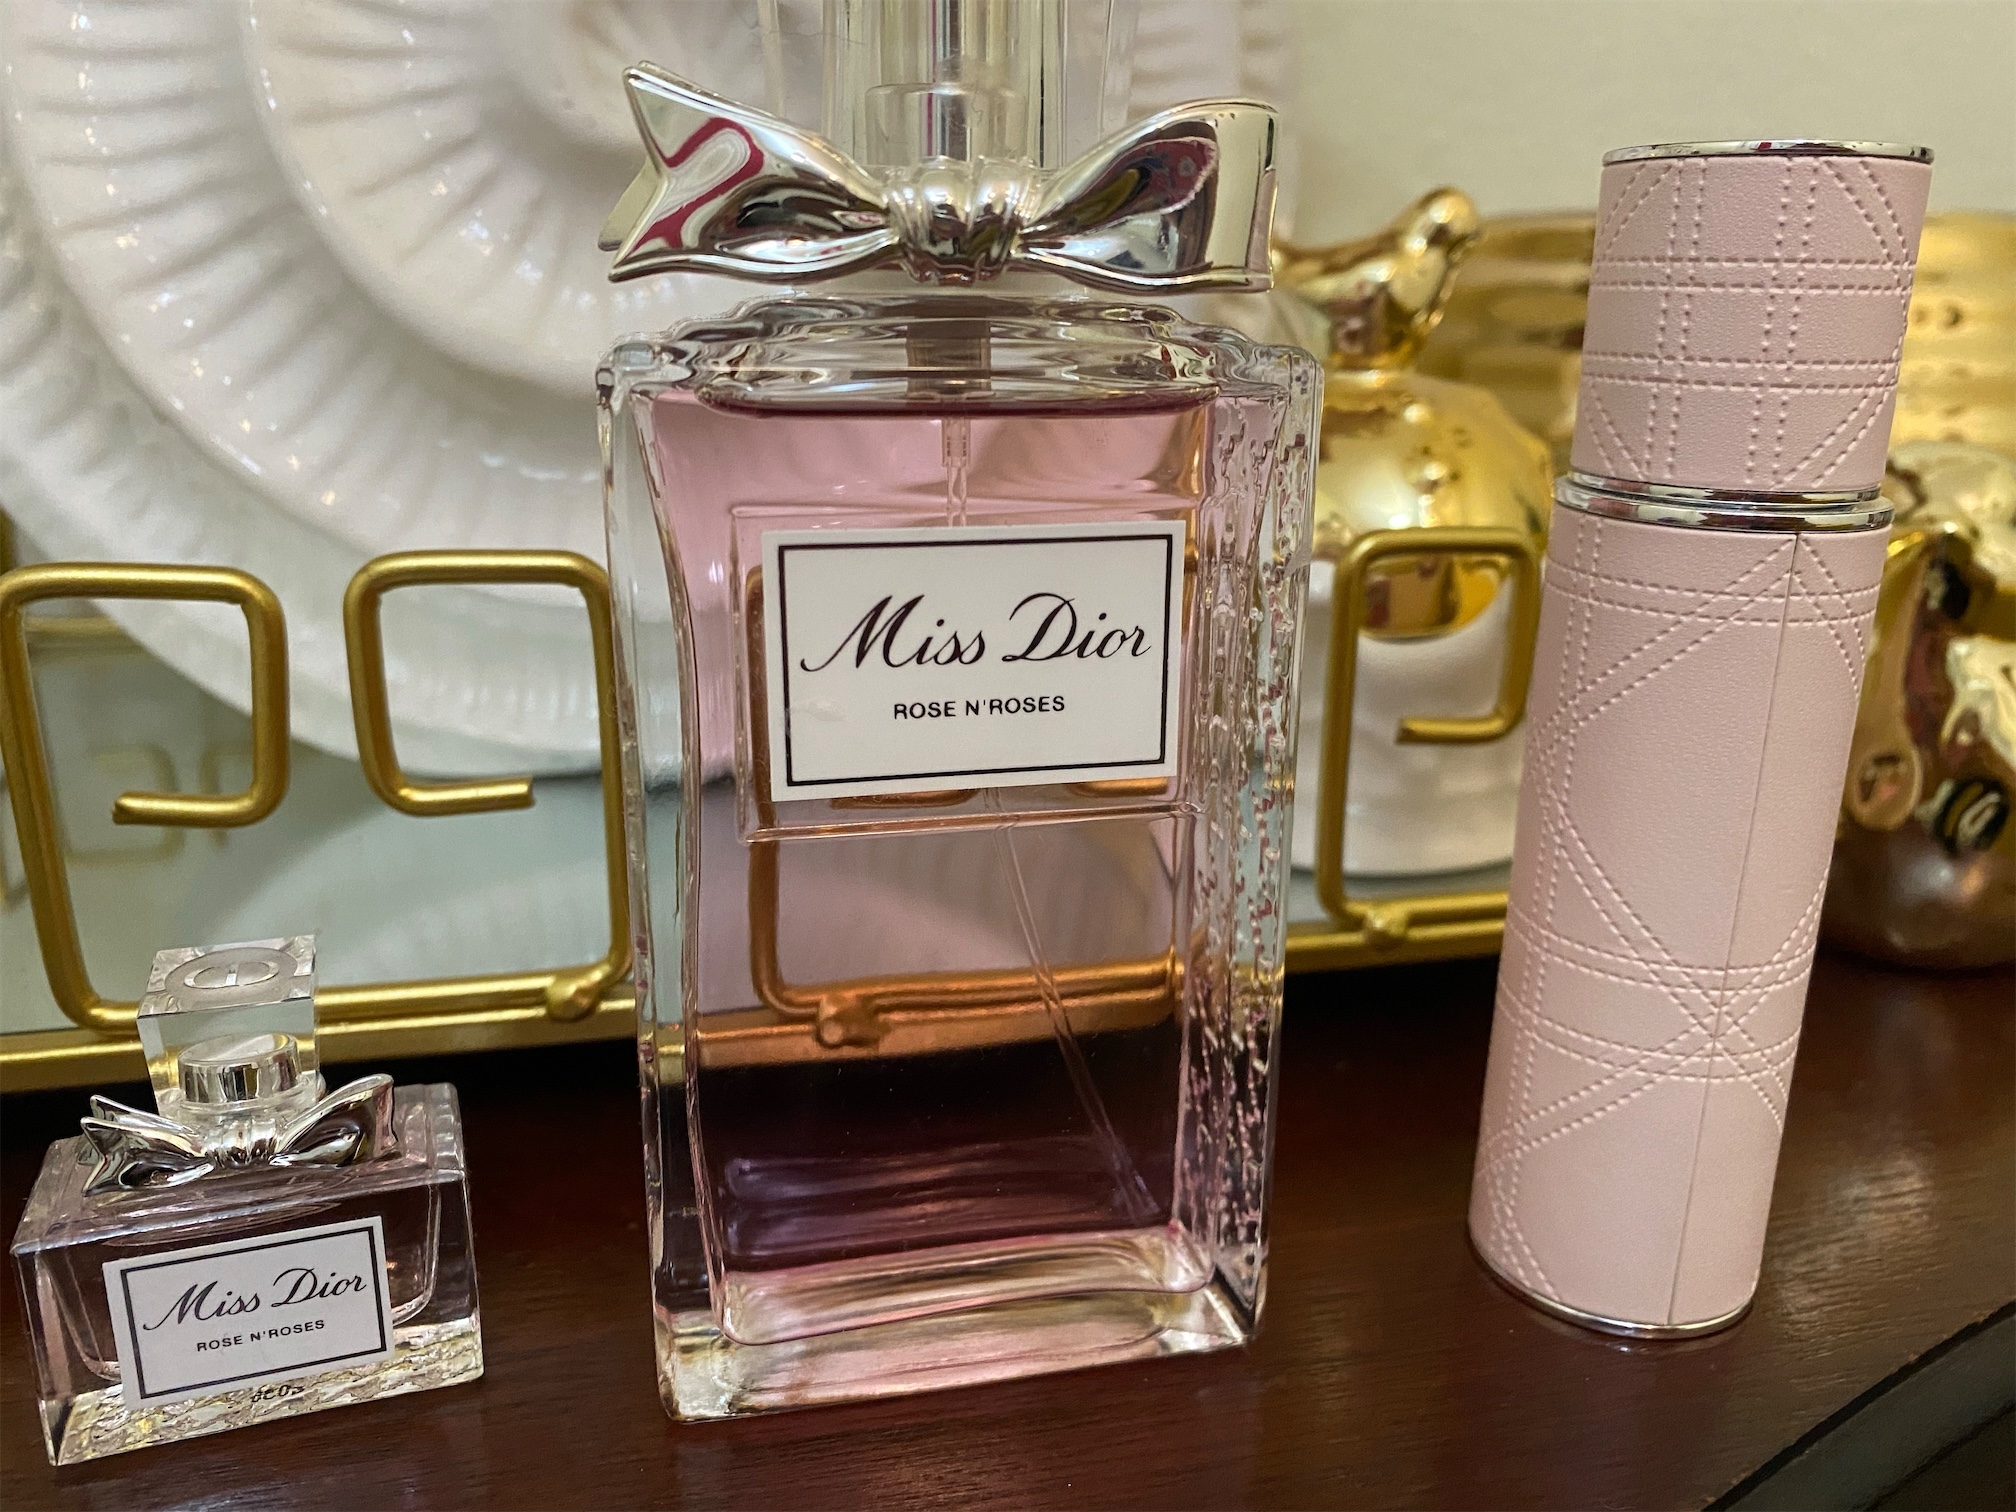 salud y belleza - Perfume miss Dior 0